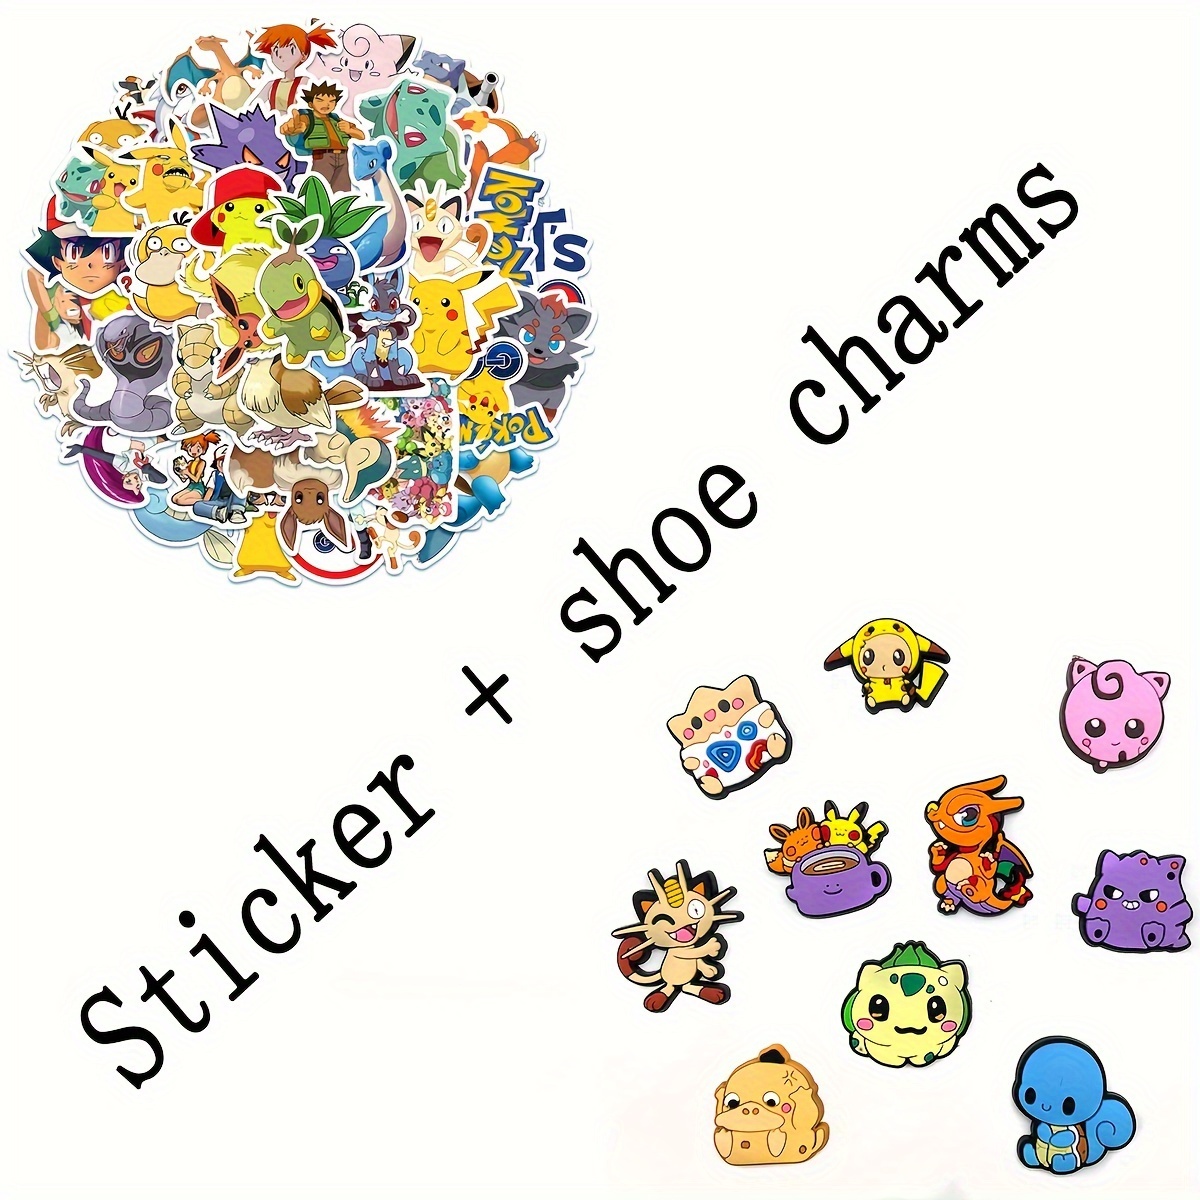 Conjunto de pegatinas Pokémon con patas Linda y colorida pegatina